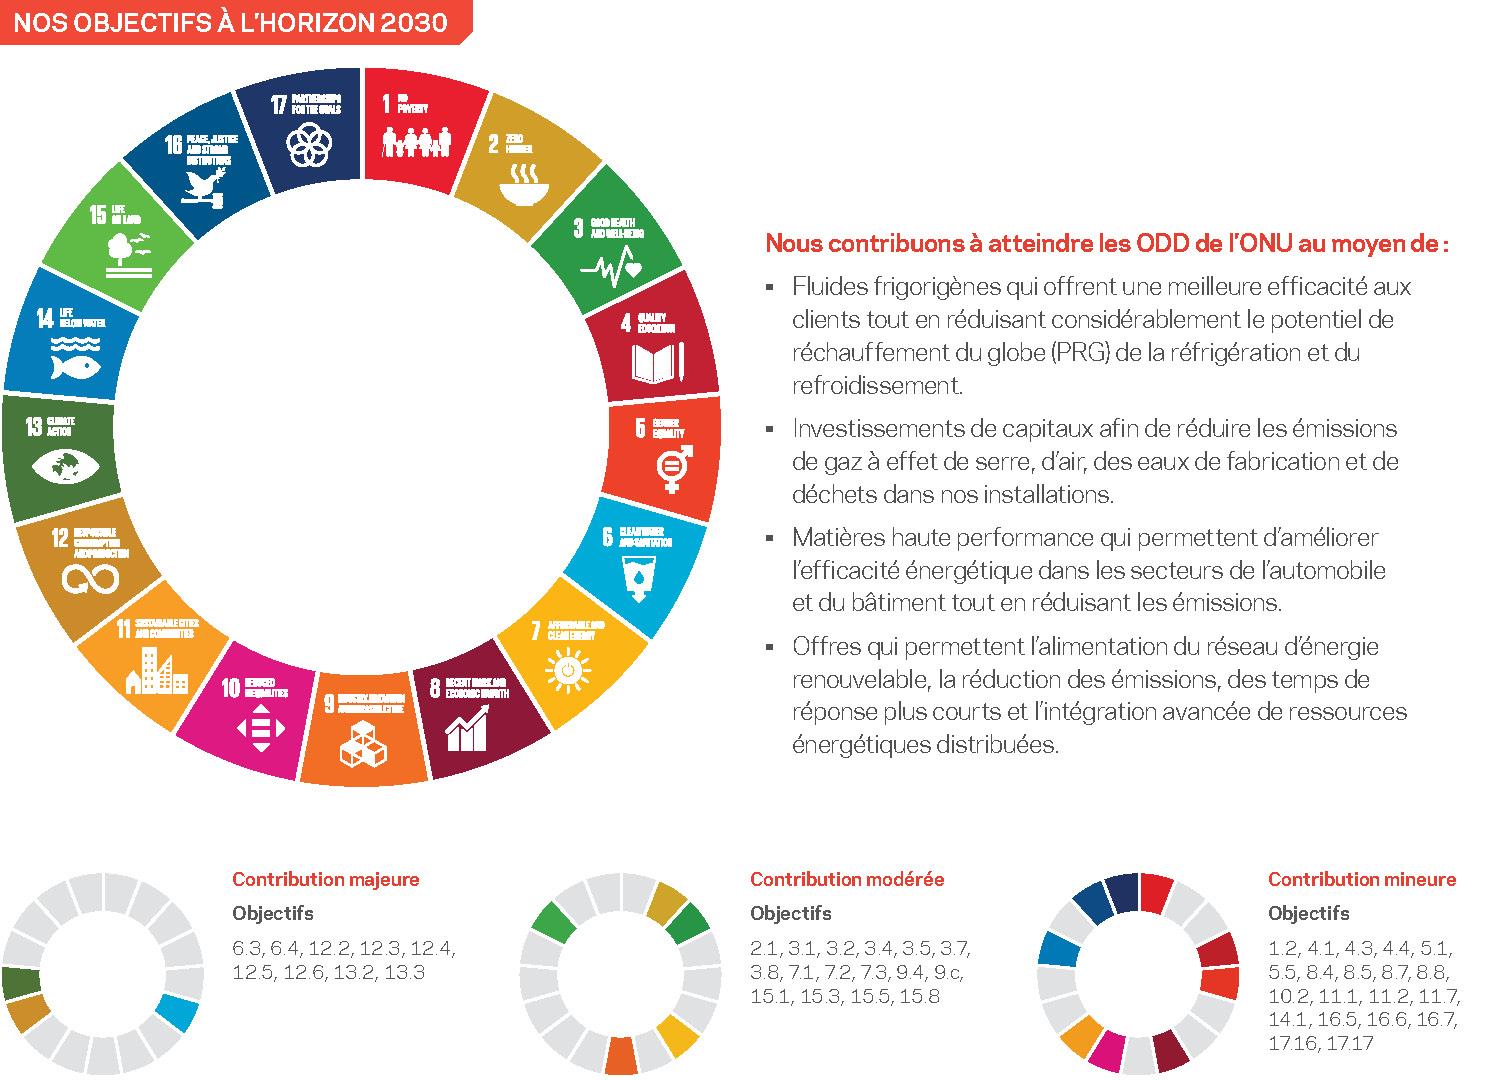 Une infographie expliquant l'impact de nos objectifs CRC sur les Objectifs de développement durable des Nations Unies (ODD).